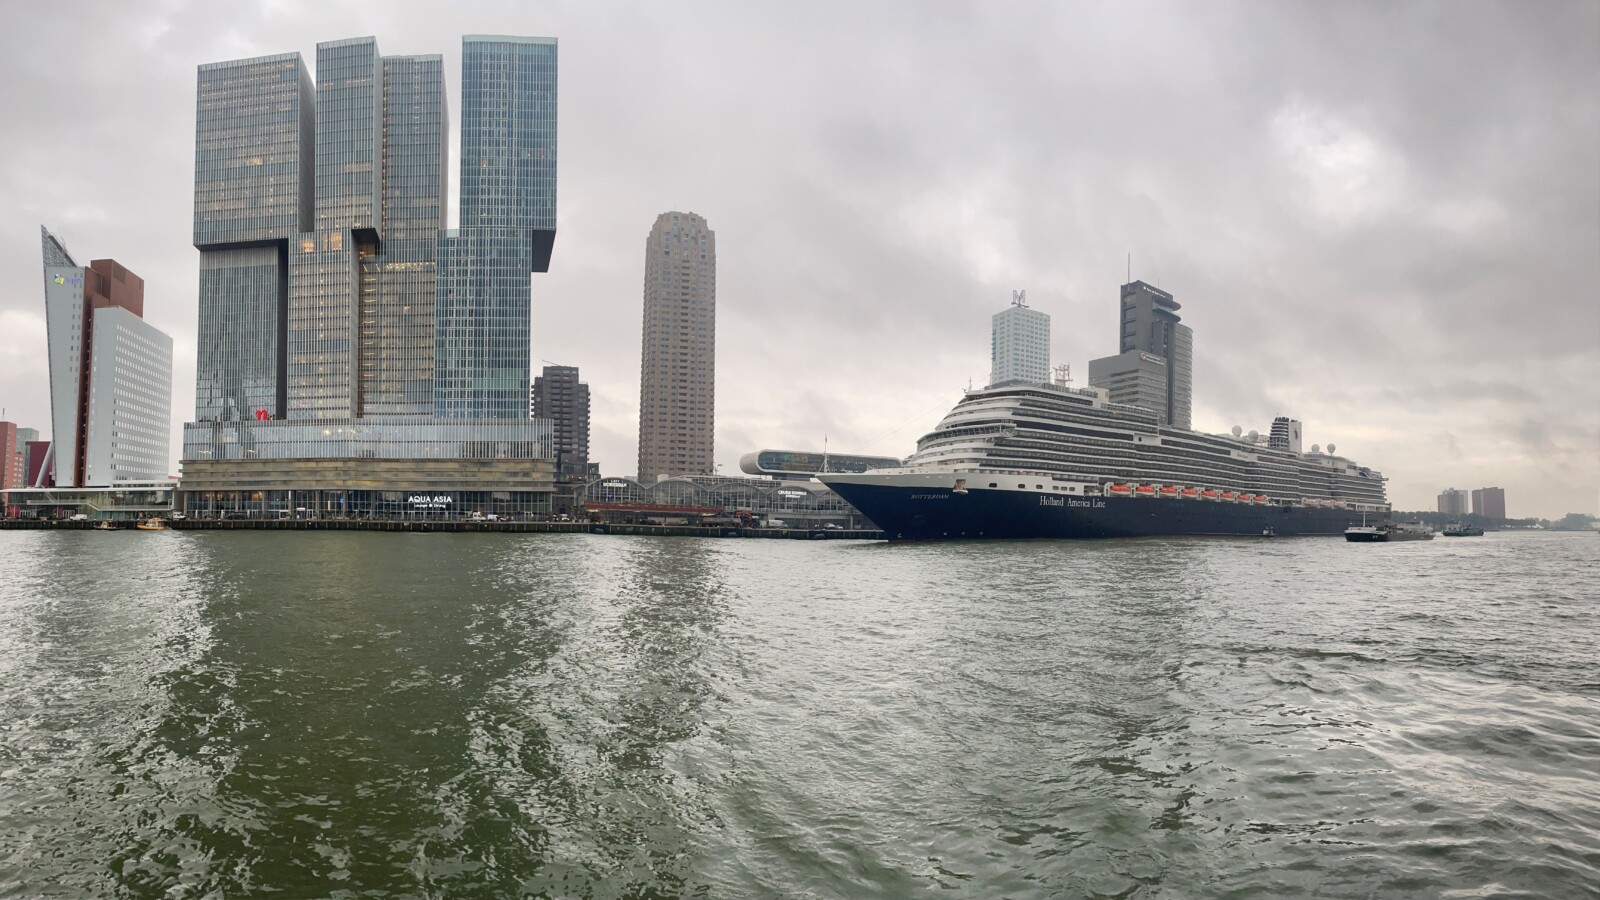 Cruise Port De Rotterdam Kop van Zuid